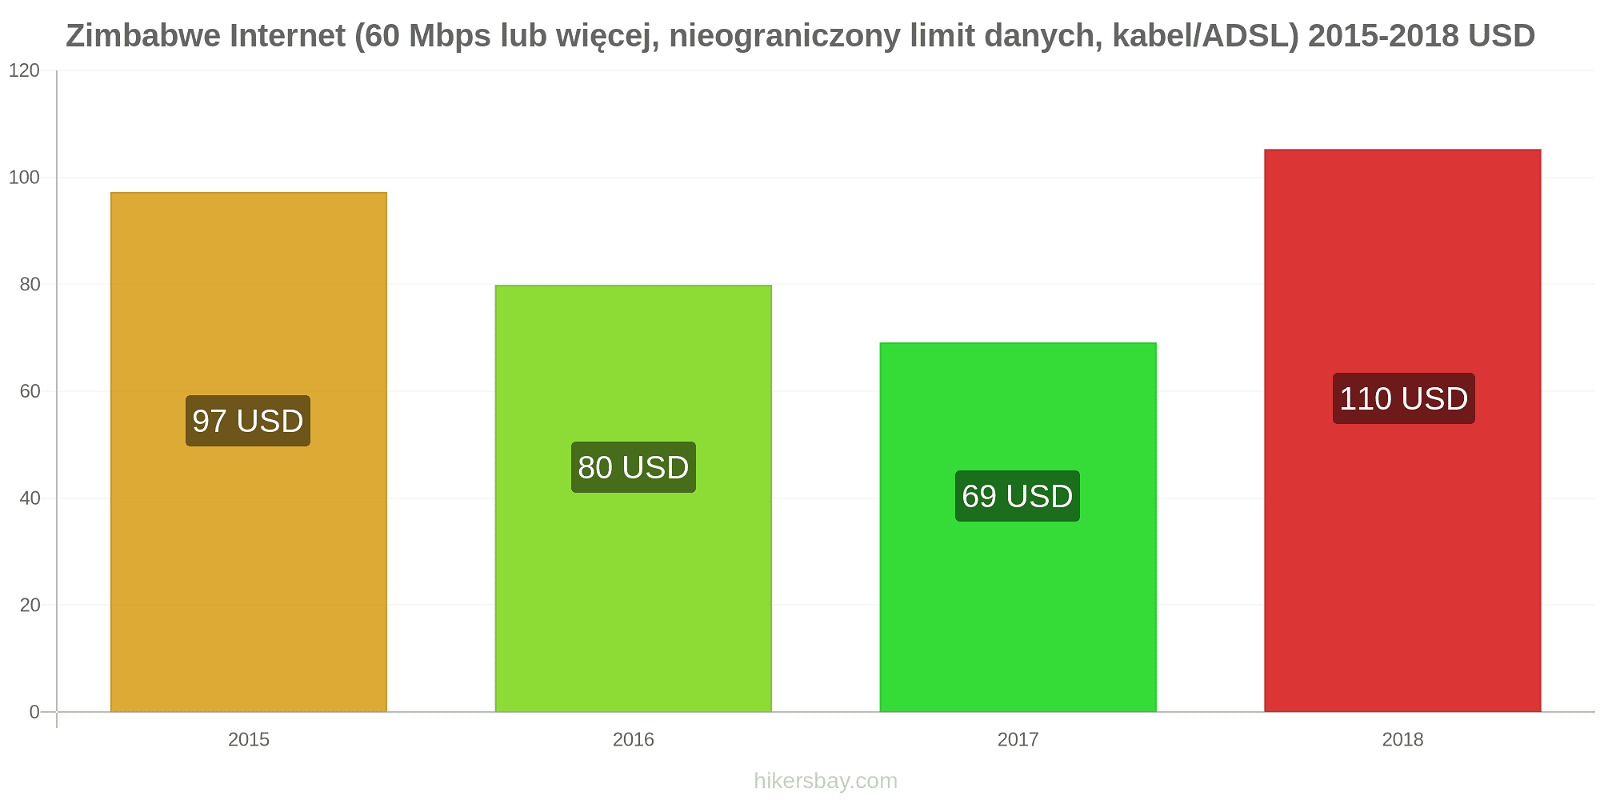 Zimbabwe zmiany cen Internet (60 Mbps lub więcej, nieograniczony limit danych, kabel/ADSL) hikersbay.com